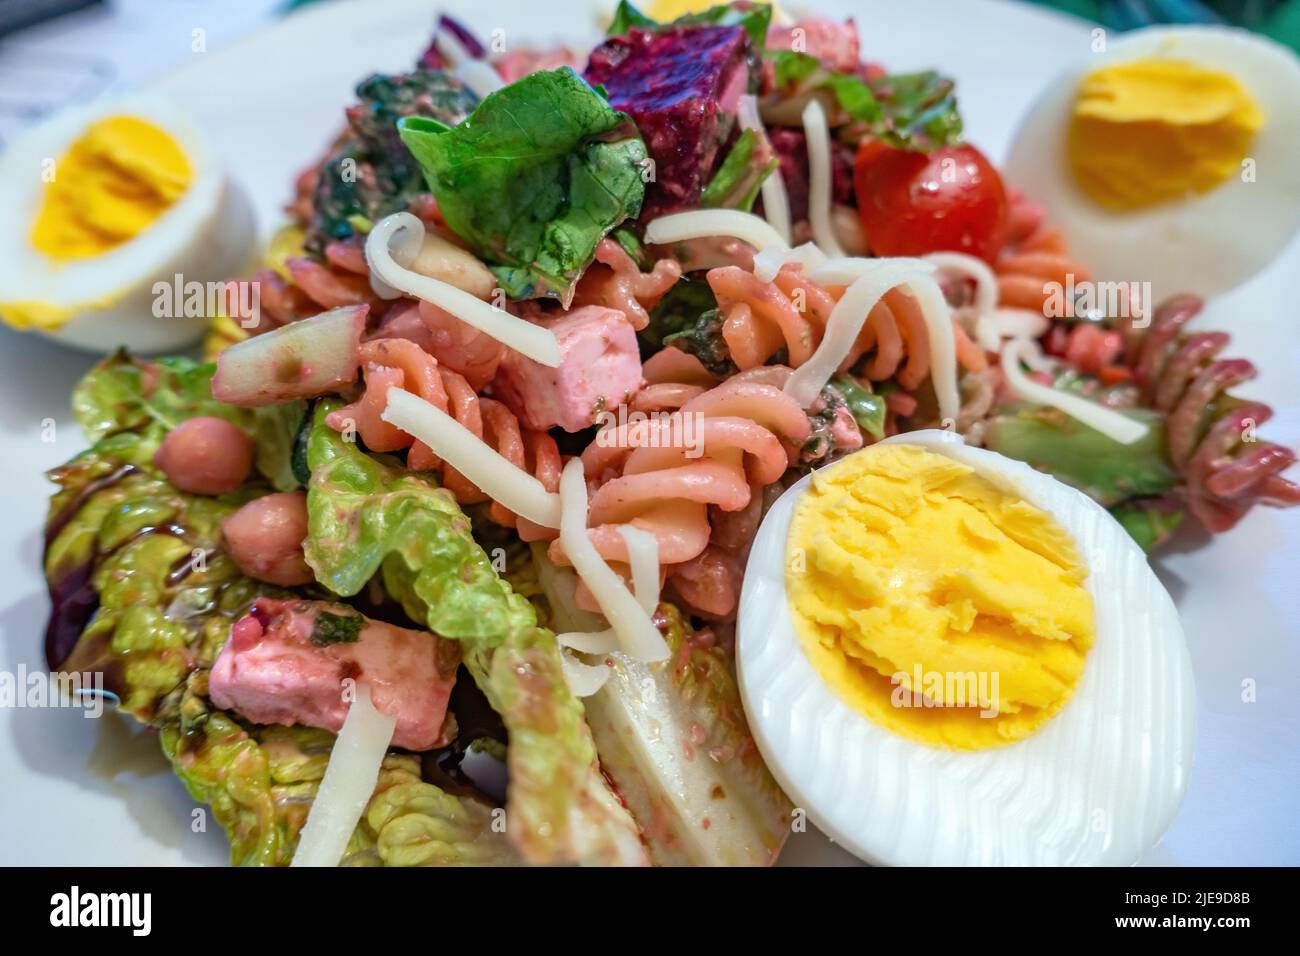 Italian Fusilli pasta salad on a plate Stock Photo